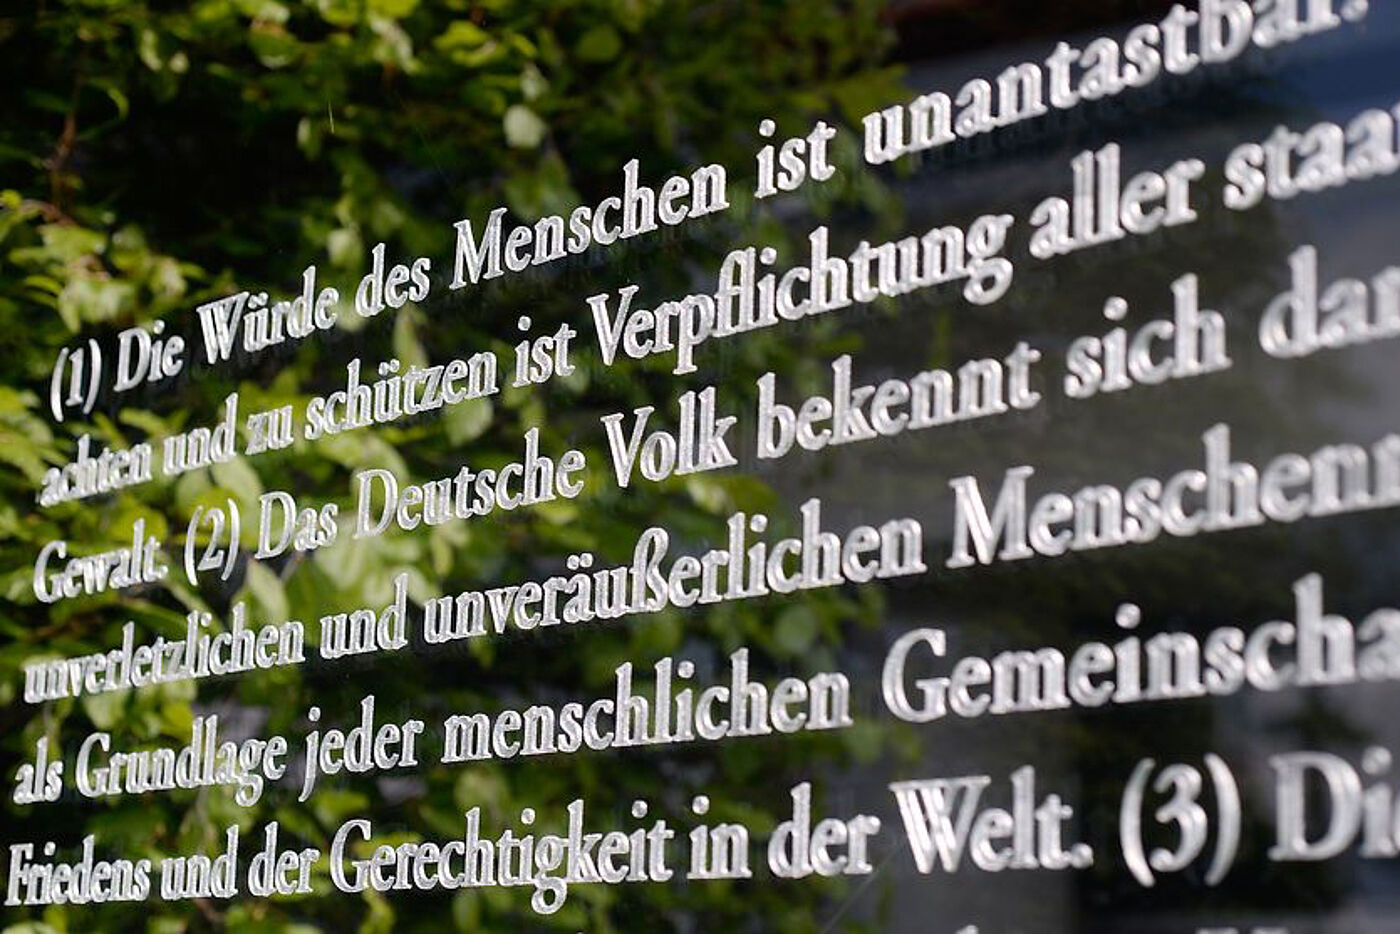 Artikel 1 des deutschen Grundgesetzes in weißer Farbe auf einer Scheibe.